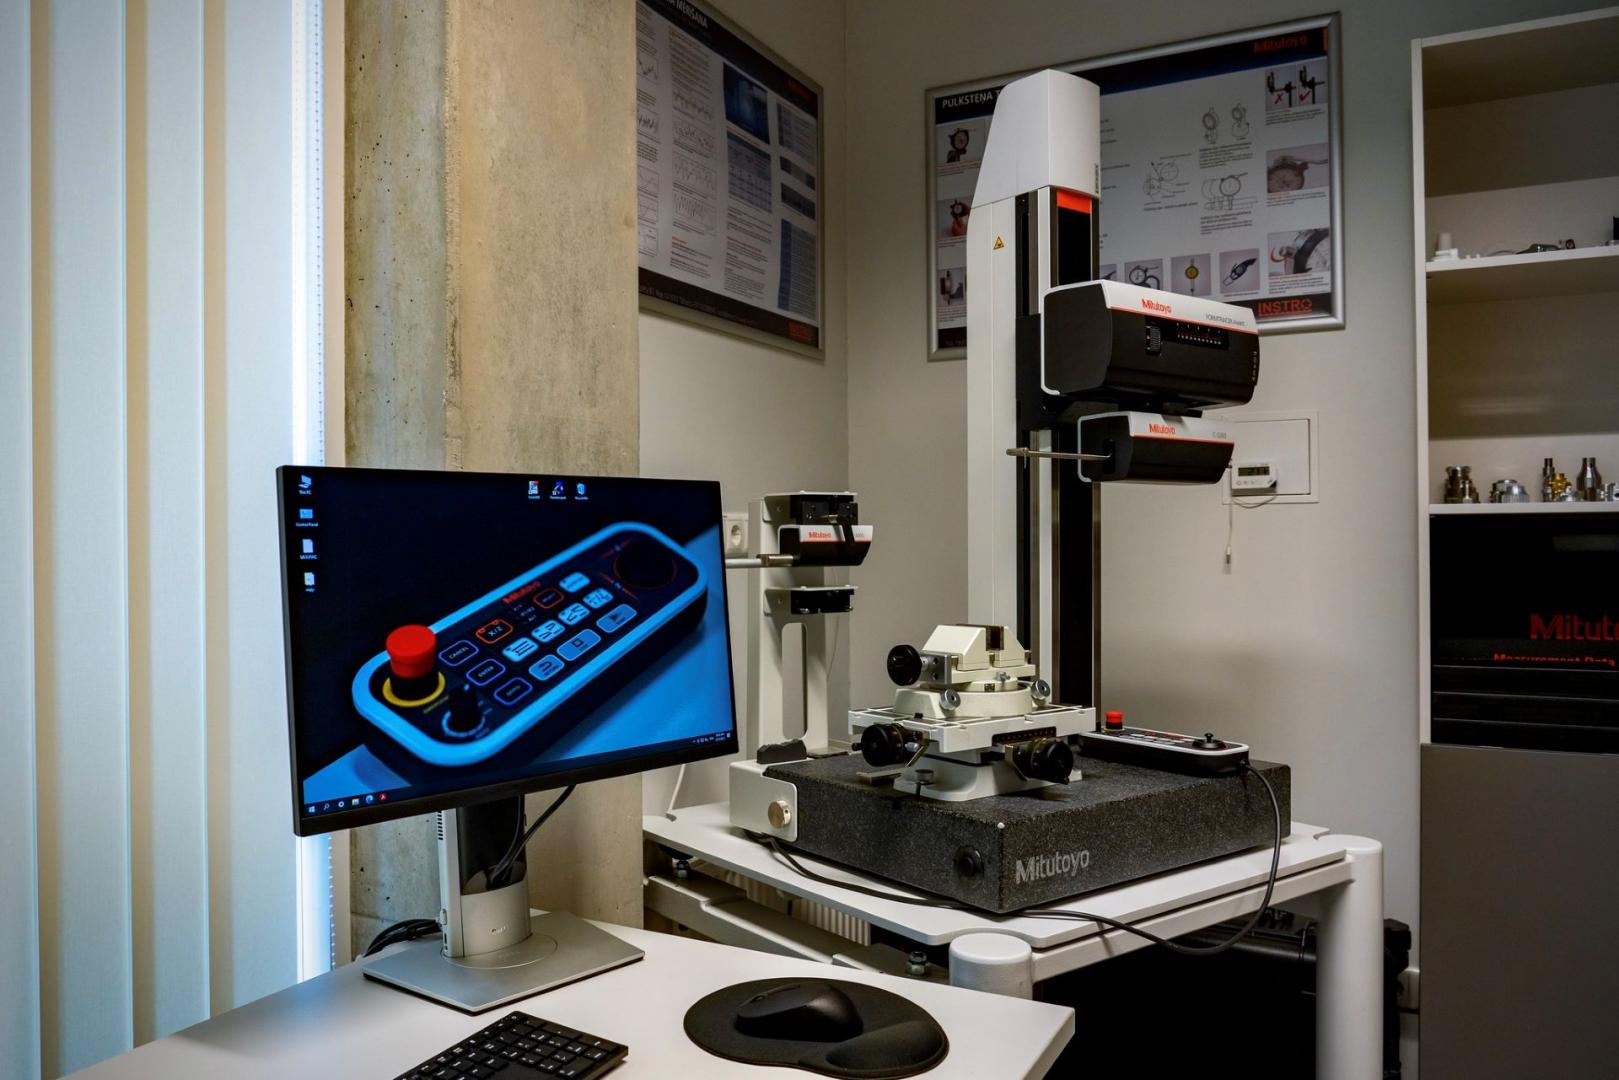 «Mitutoyo» metroloģijas laboratorijas aprīkojuma regulāra pilnveide paver arvien plašākas iespējas RTU studentiem un zinātniekiem